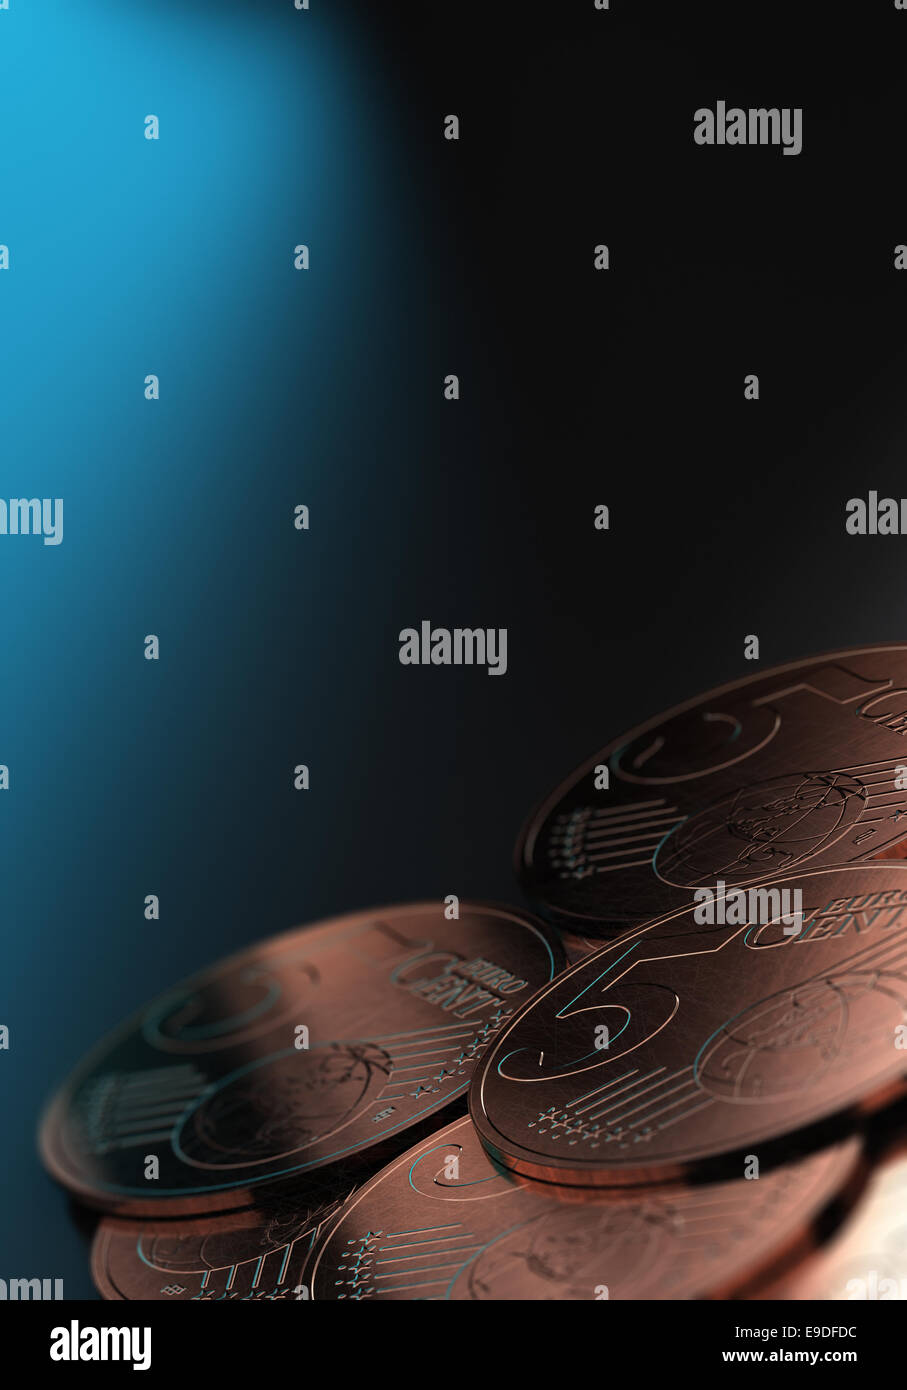 Euro moneta, chiudere fino a 5 centesimi di Euro monete su sfondo blu con effetto di sfocatura Foto Stock